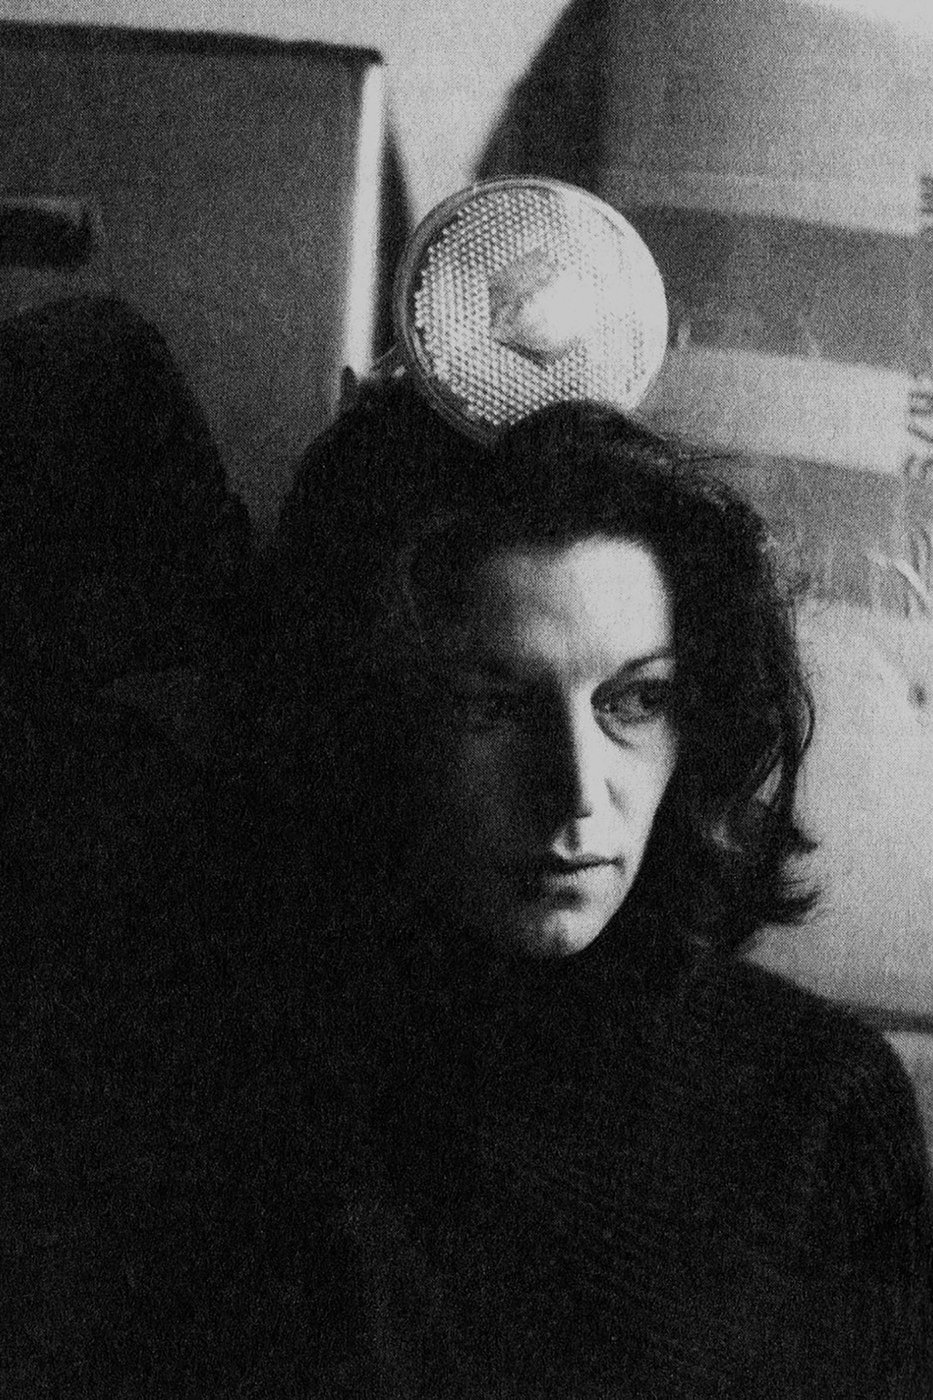 Portrait von Cathrin Pichler in Schwarz-Weiss, im Hintergrund sind eine Lampe und Kartonkisten zu erkennen.